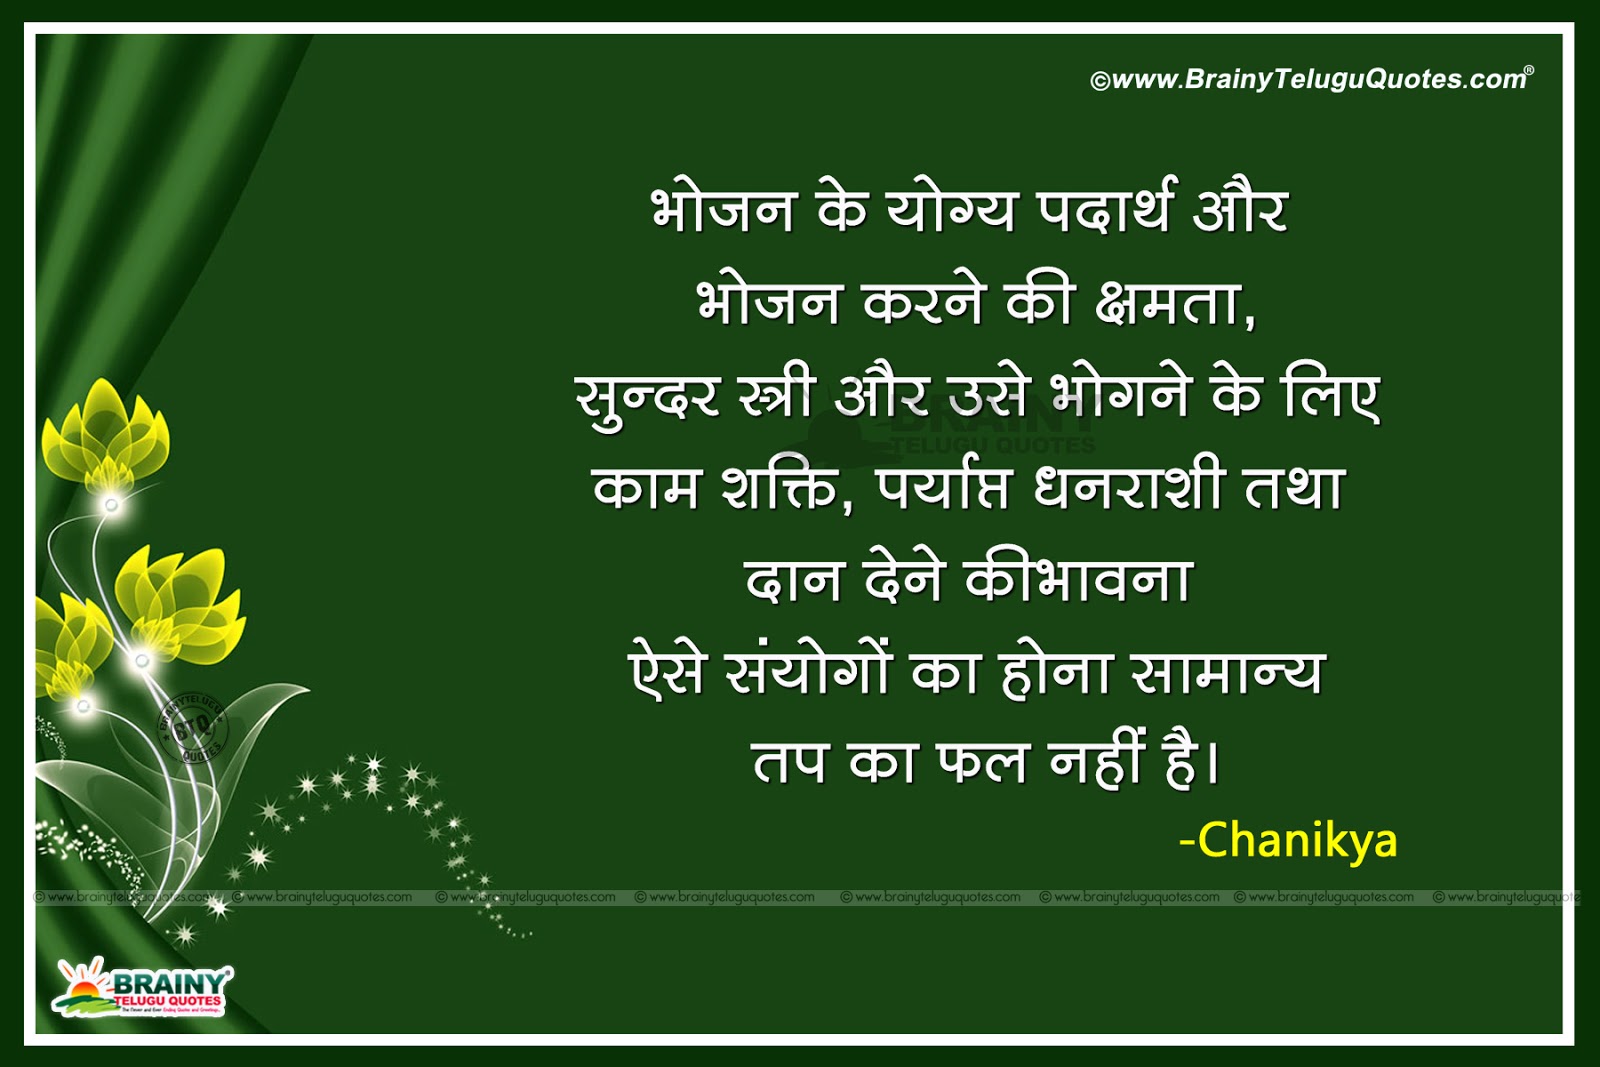 Chanakya Niti Quotes In Hindi | Brainyteluguquotes.comtelugu Quotes|English Quotes|Hindi Quotes|Tamil Quotes|Greetings